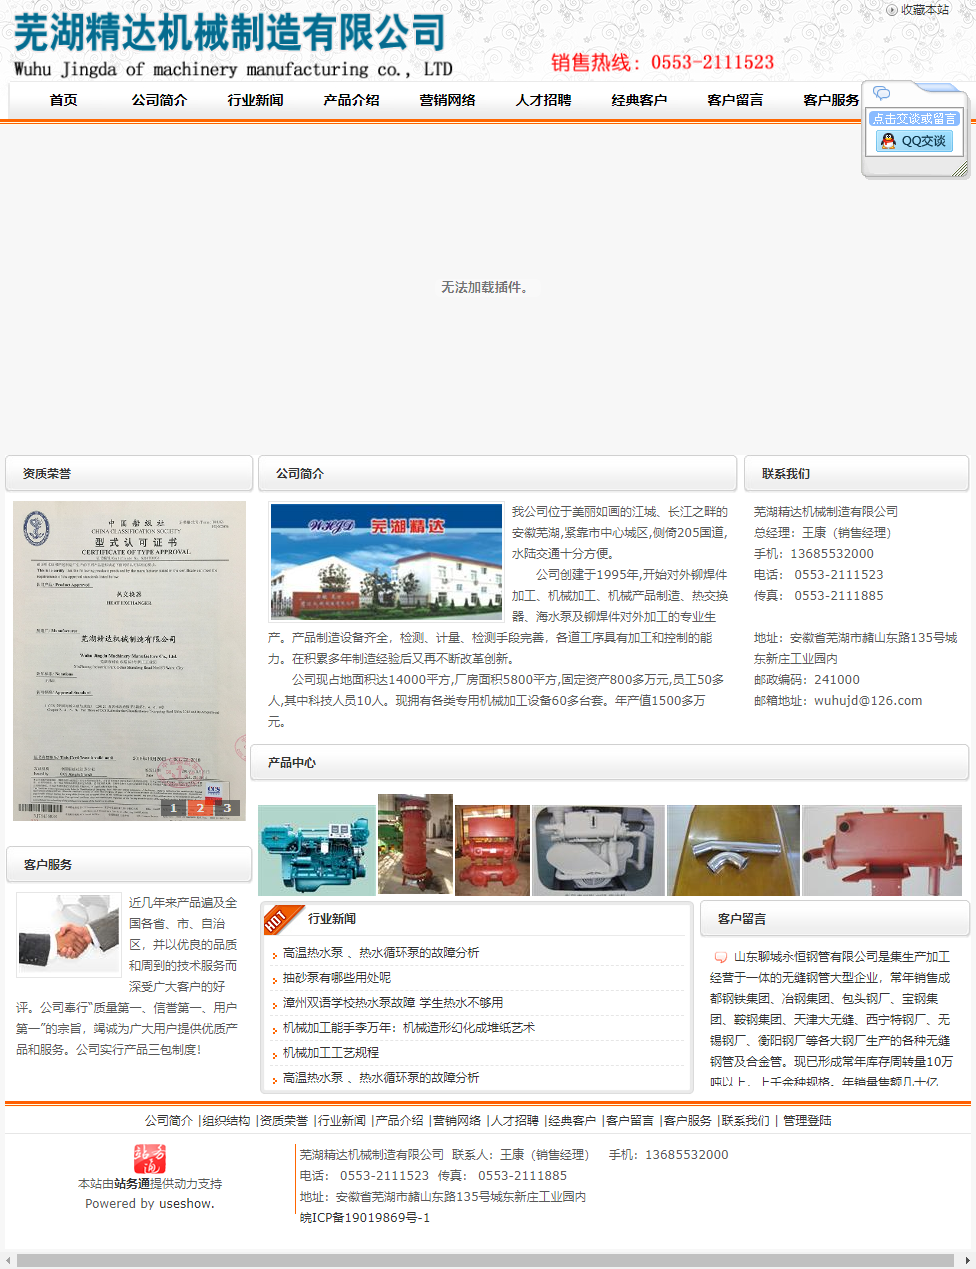 芜湖精达机械制造有限公司网站案例